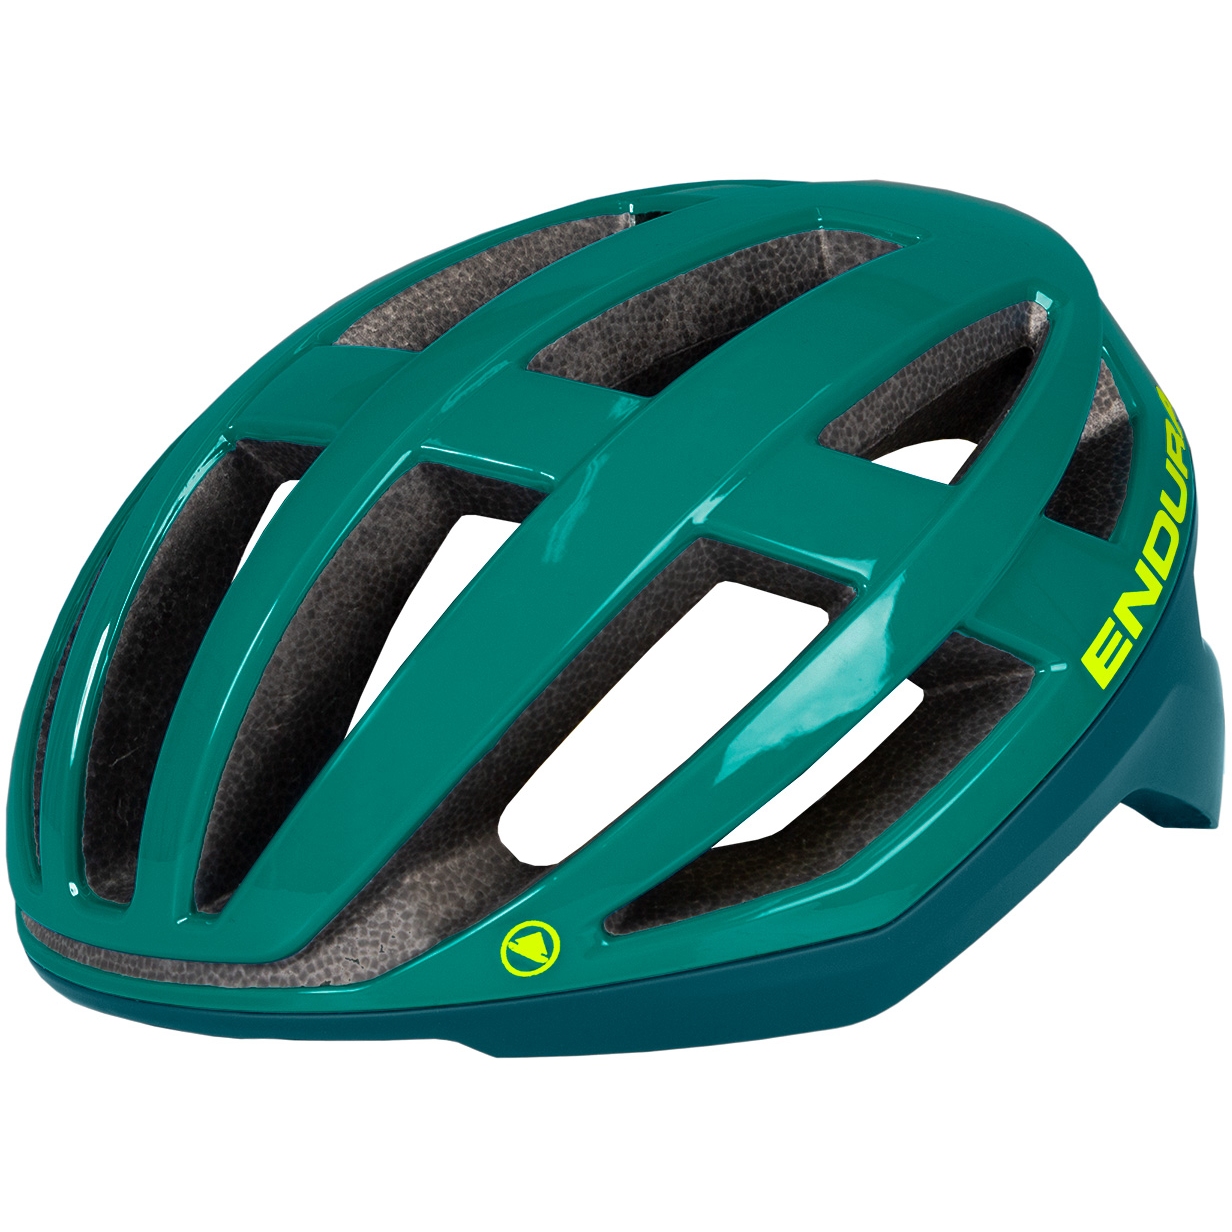 Produktbild von Endura FS260 Pro MIPS® Helm - sattes teal